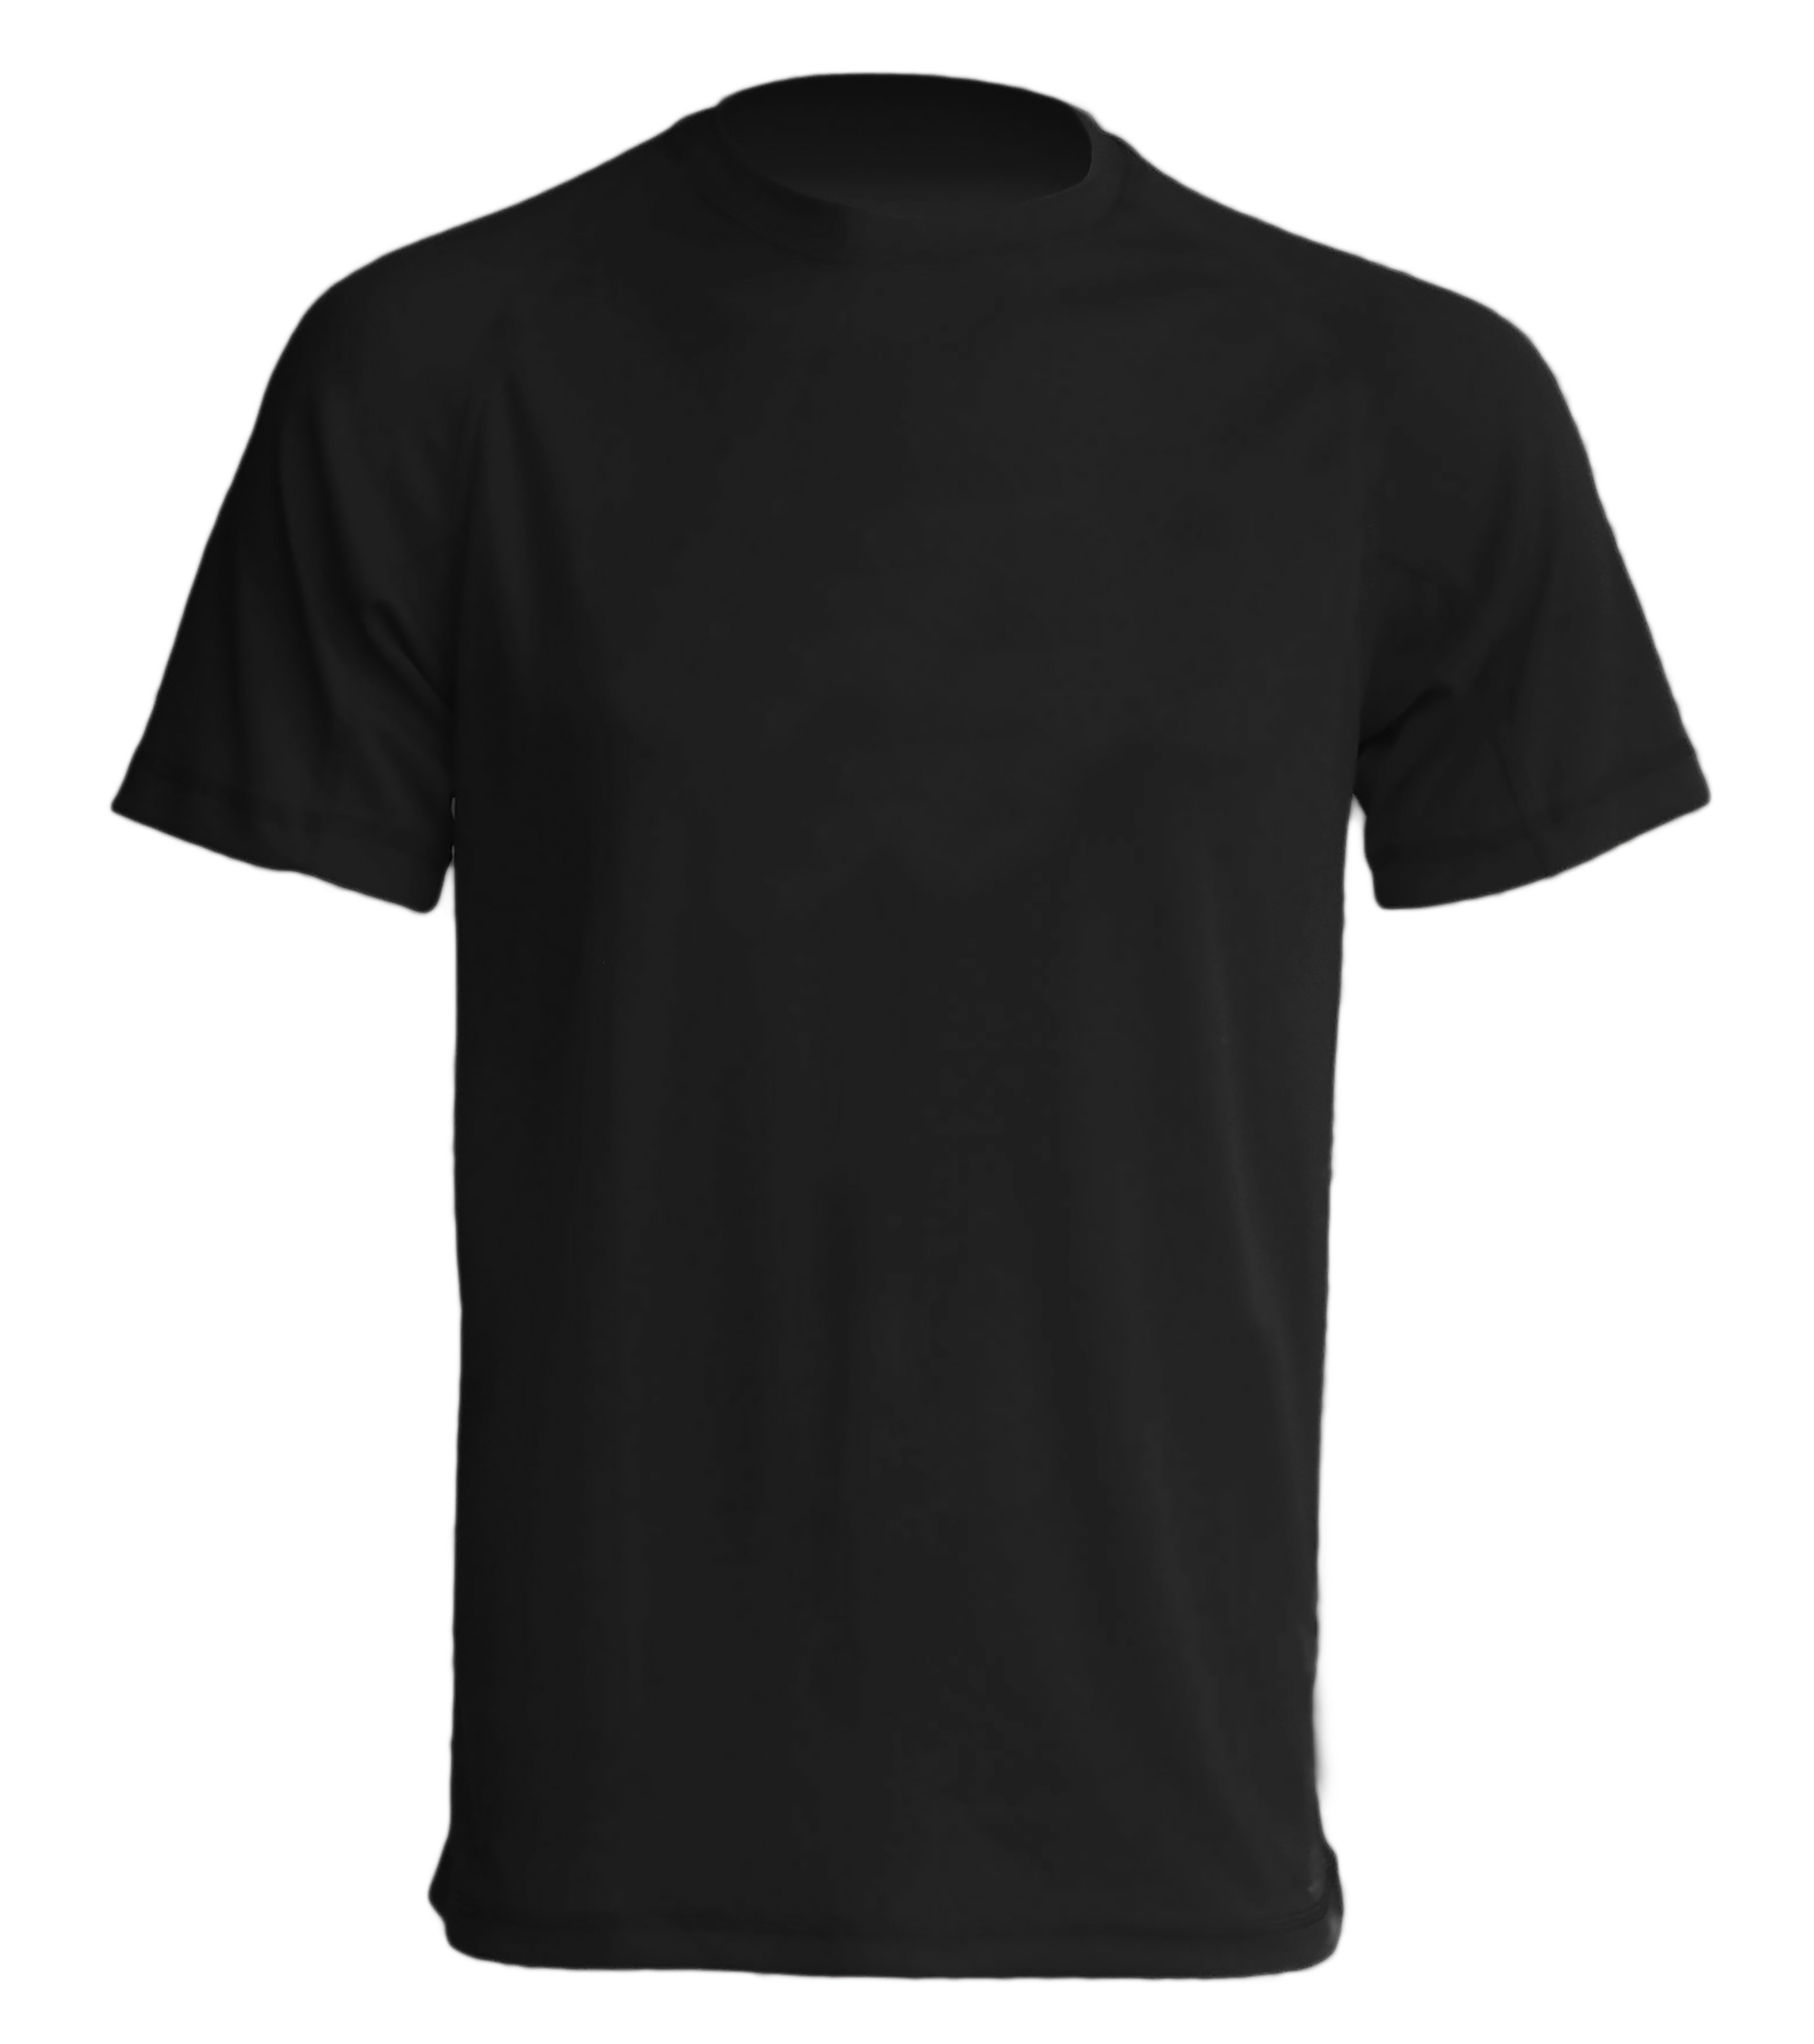 Camiseta hombre personalizadas superenduro-19_007 